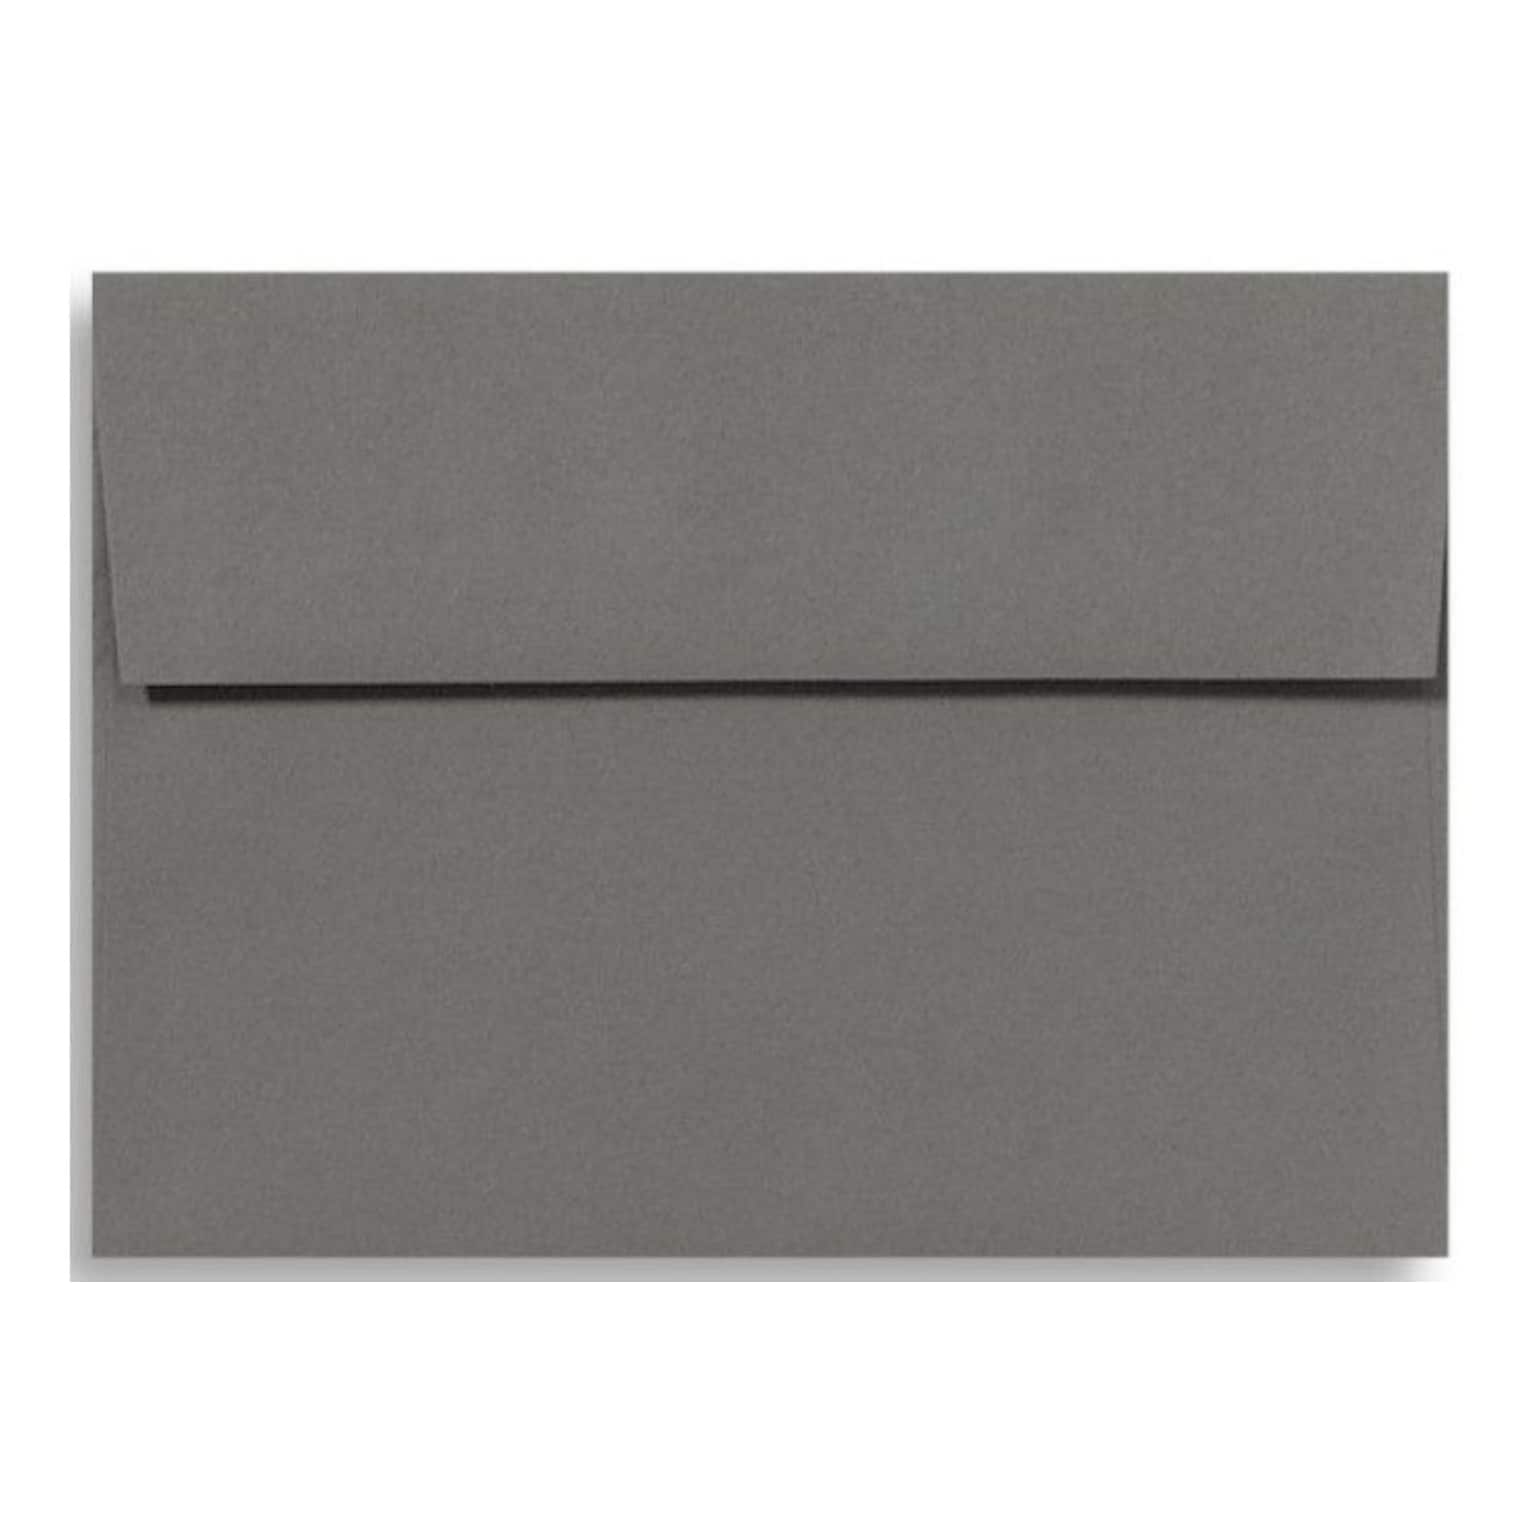 LUX A4 Invitation Envelopes (4 1/4 x 6 1/4) 50/Box, Smoke (LUX-4872-22-50)